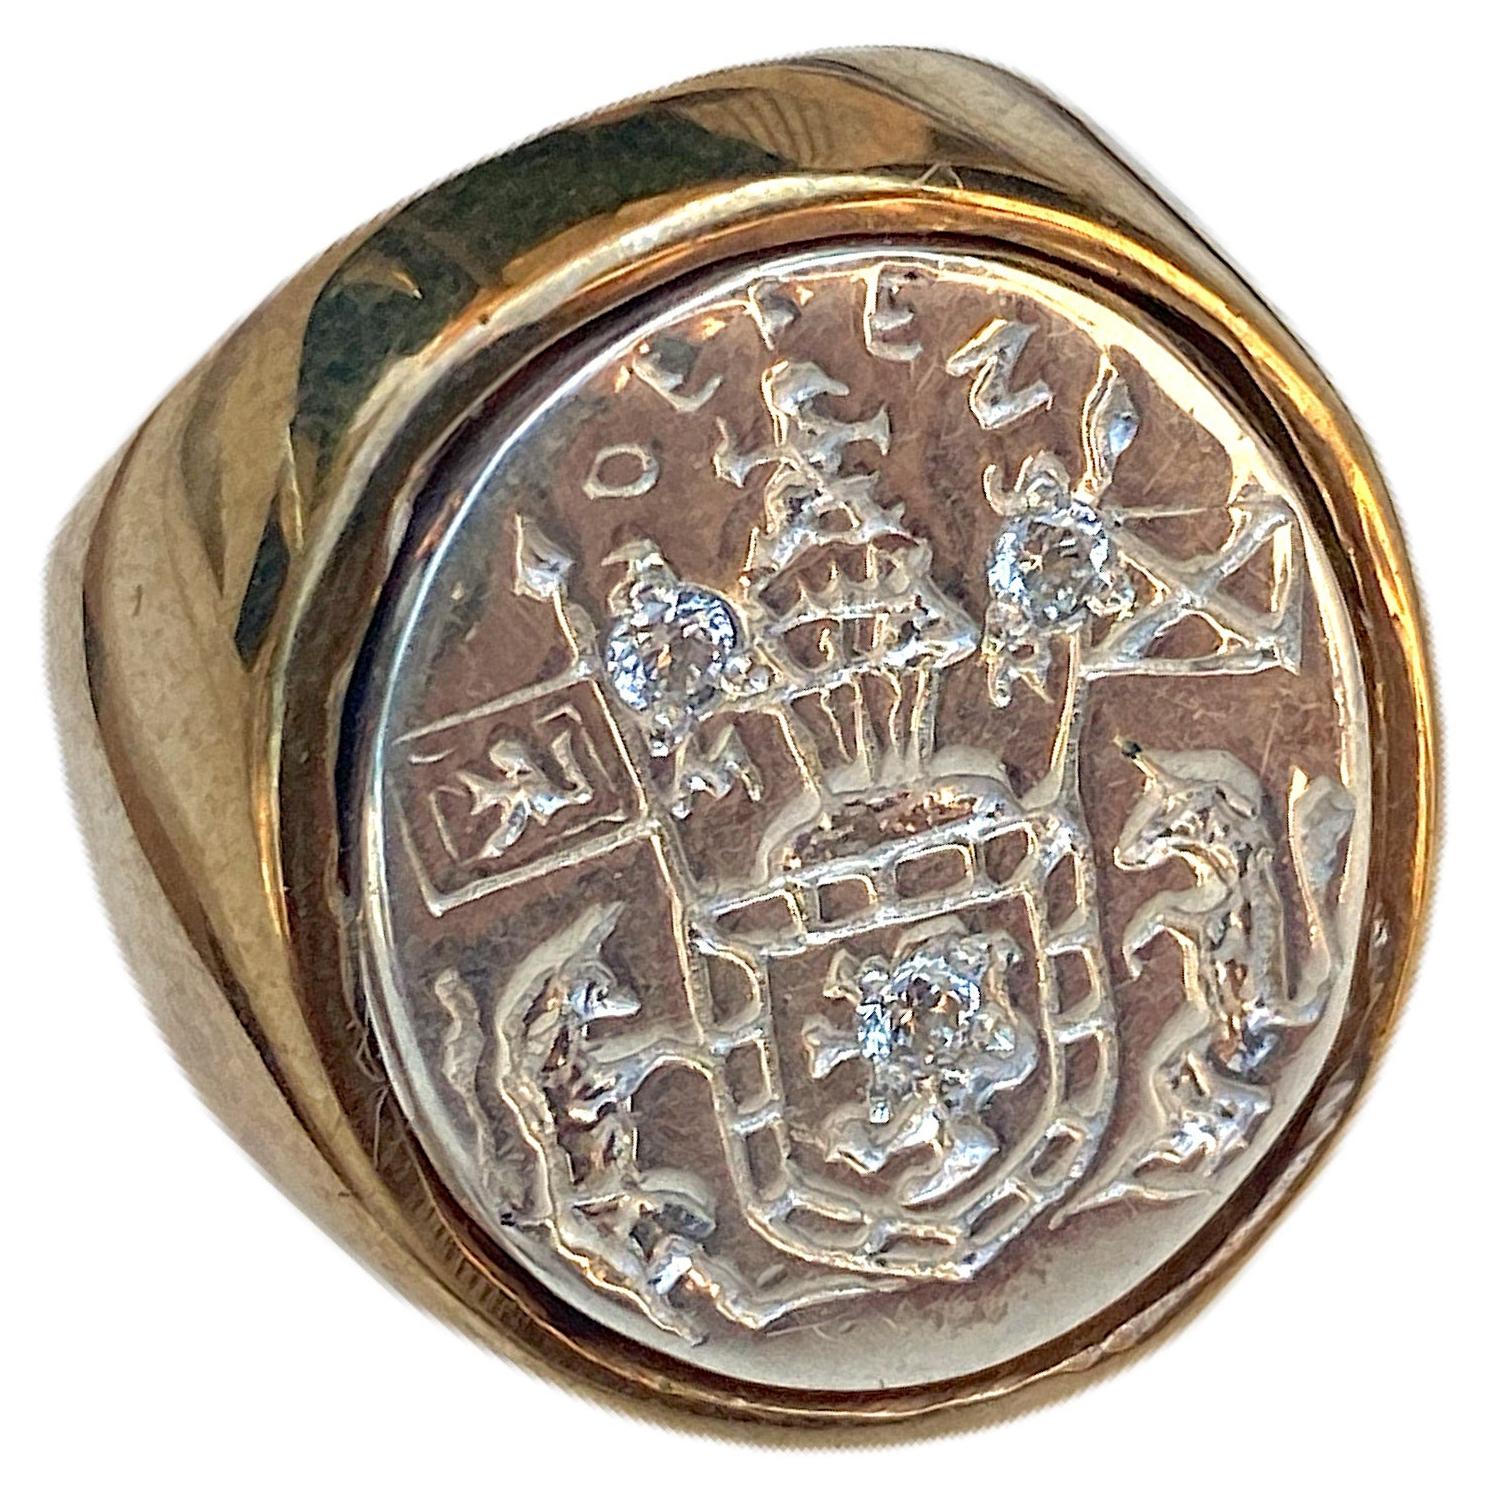 3 pcs Sapphire Unisex Crest Ring Signet Style Sterling Silver Bronze J Dauphin peut être porté par les femmes ou les hommes.

Inspiré de la bague de la reine Marie d'Écosse. Bague sigillaire en or ; gravée ; épaules ornées de fleurs et de feuilles.